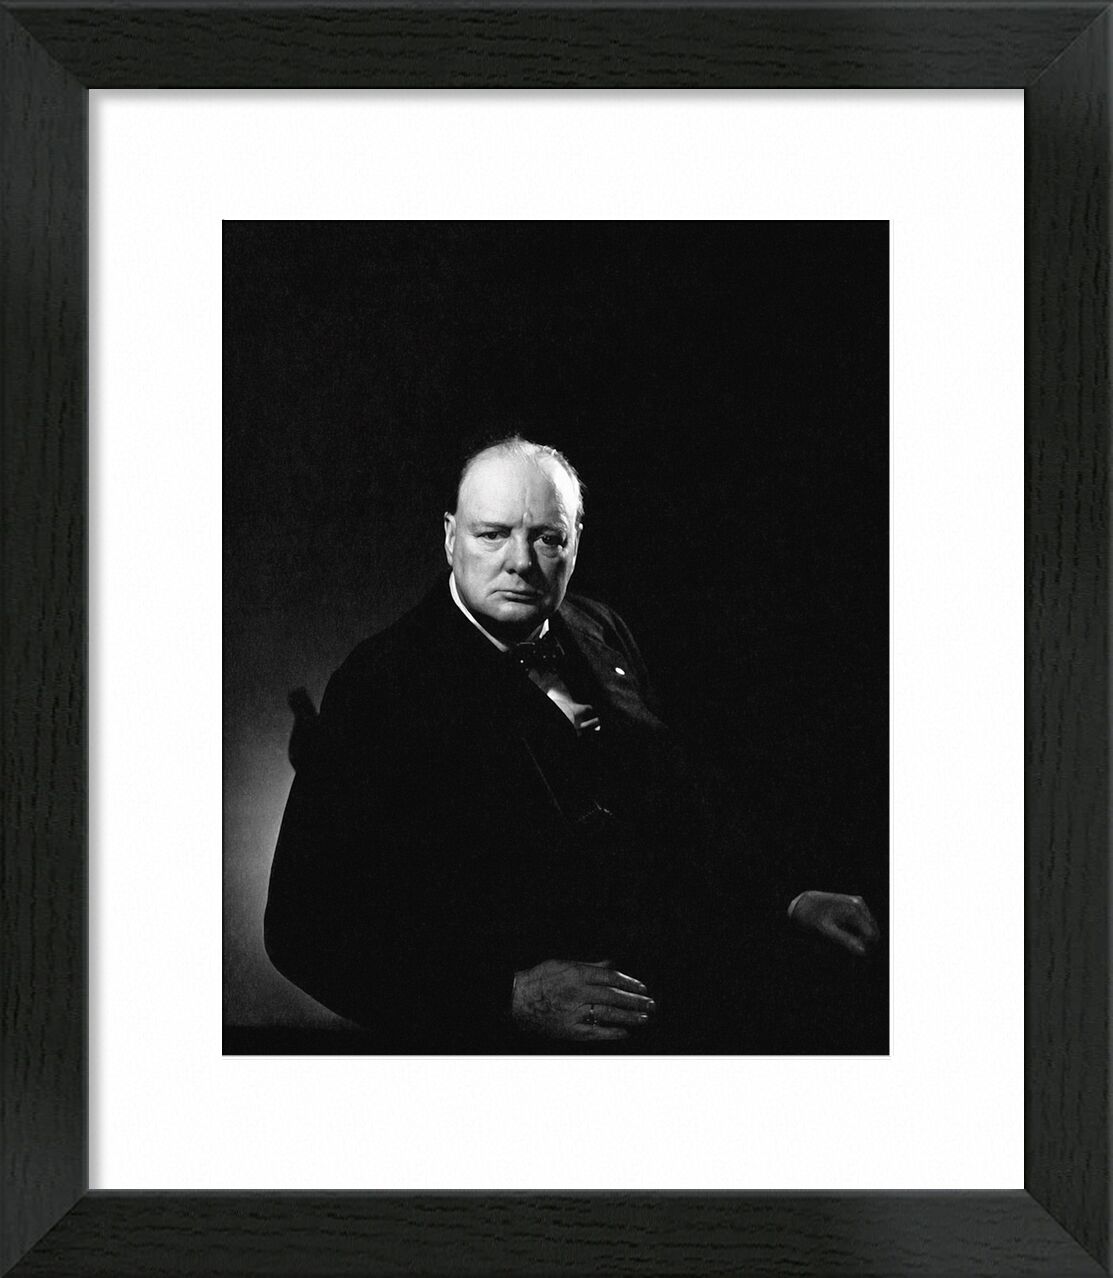 Portrait of Churchill - Edward Steichen von Bildende Kunst, Prodi Art, Porträt, Steichen, Schwarz und weiß, churchil